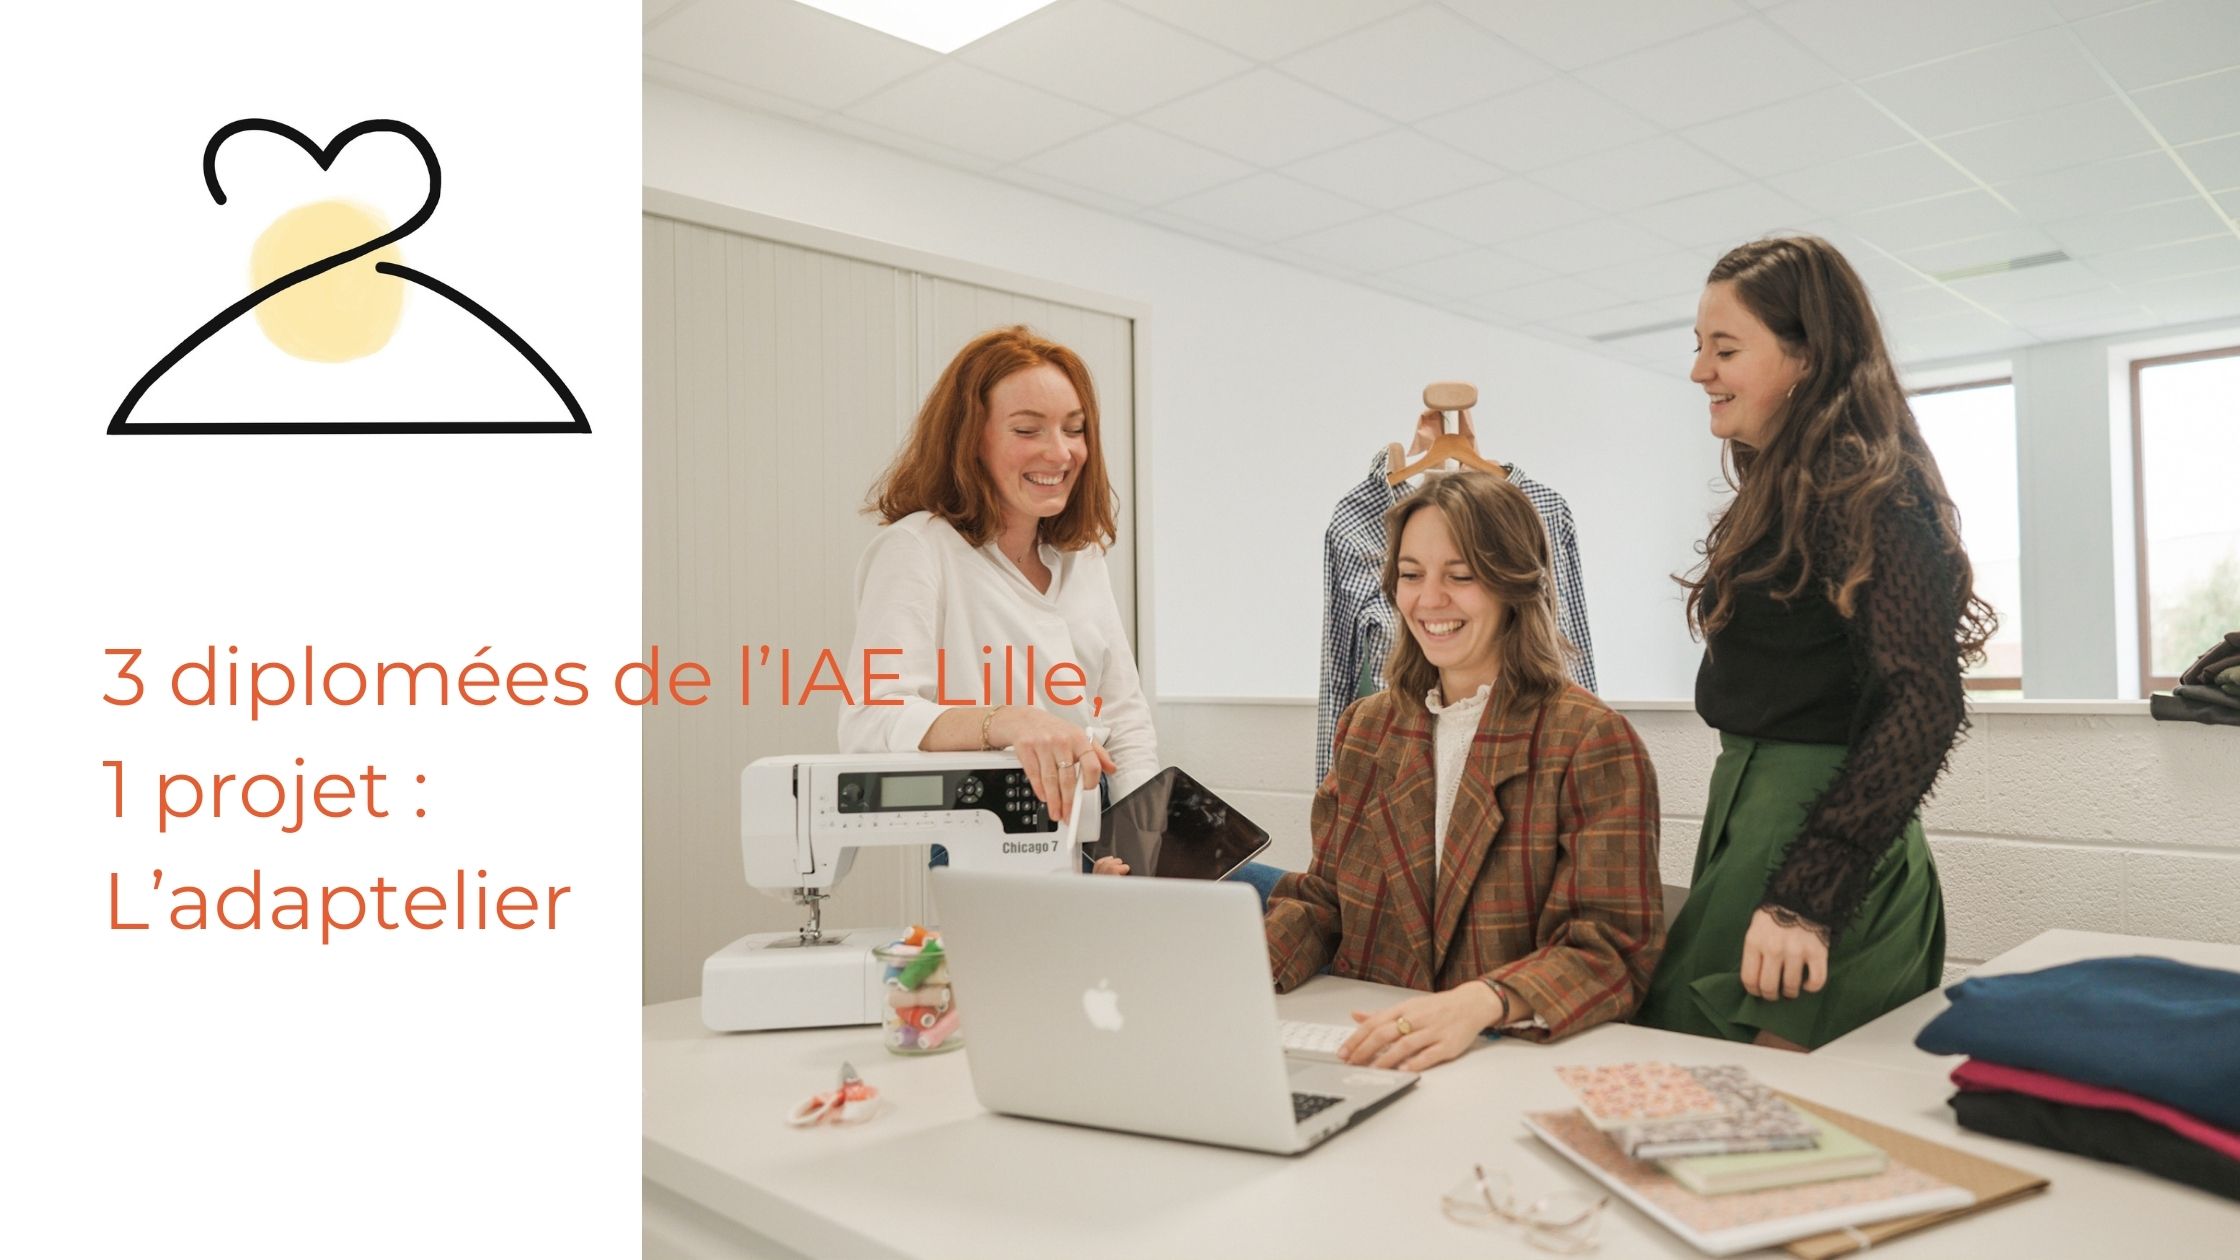 3 diplômées de l’IAE Lille, 1 projet : L’adaptelier